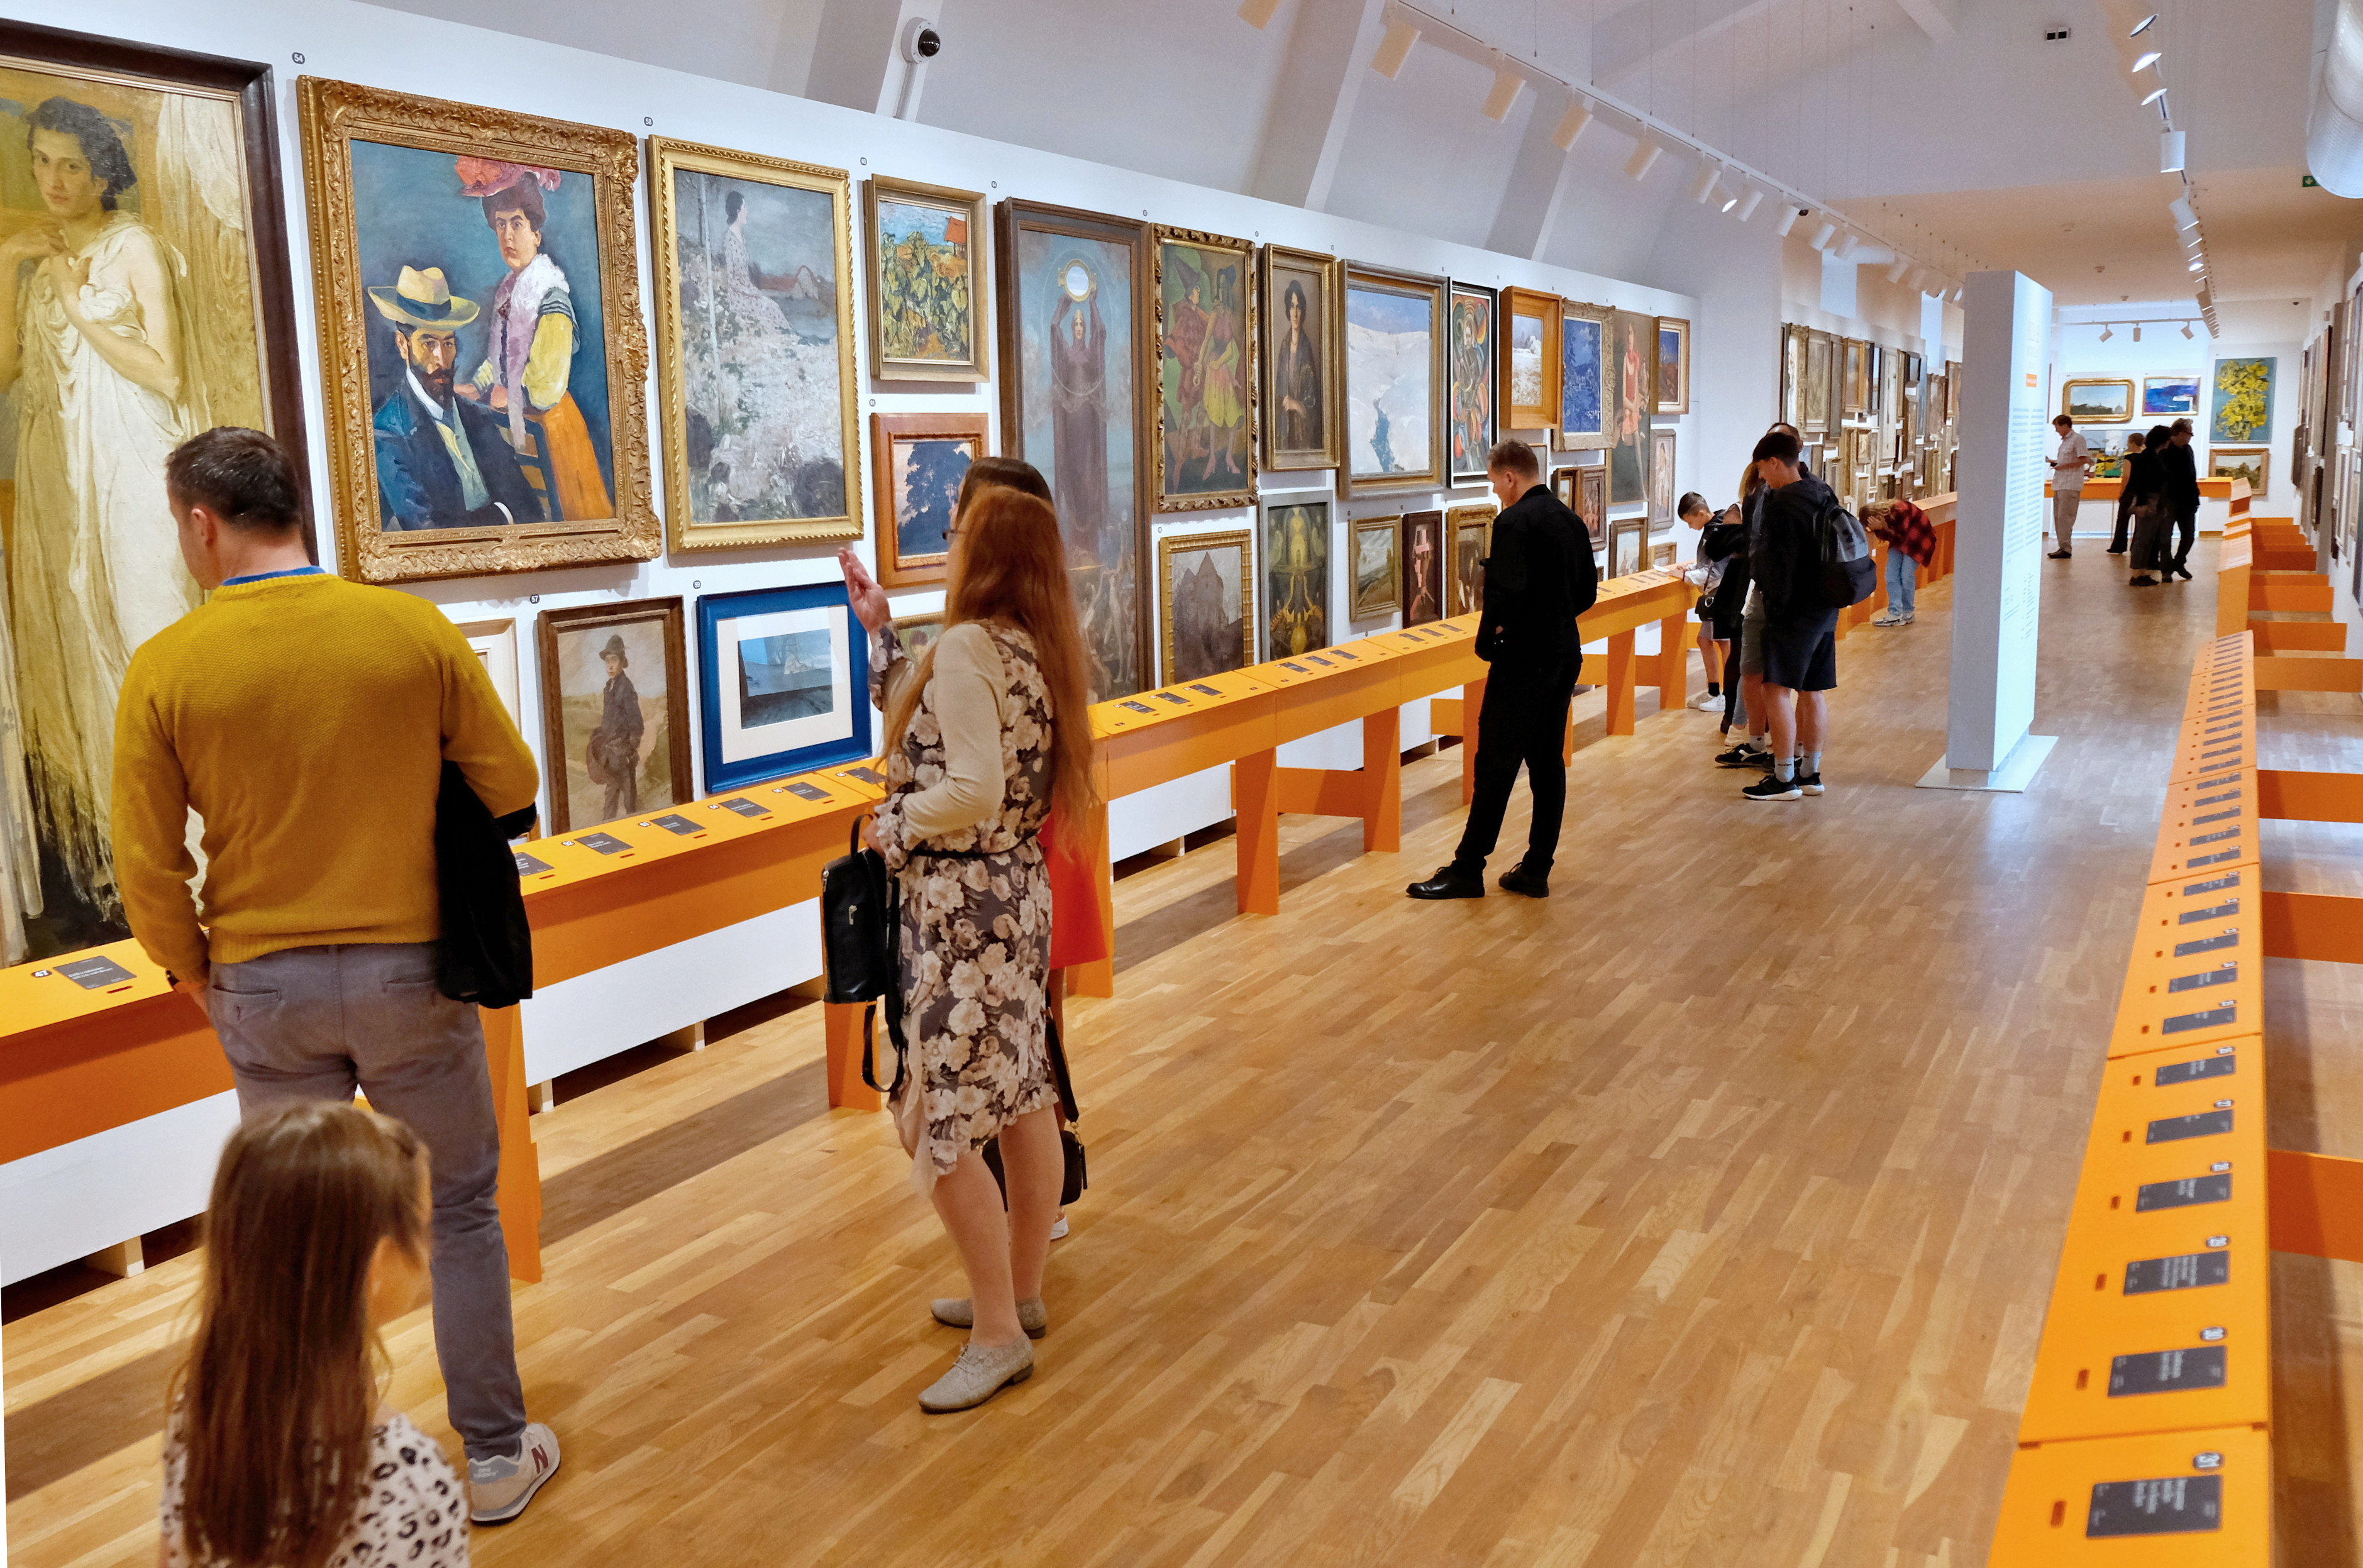 Galerie moderního umění slaví 70 let. V rámci oslav otevřela výstavu, kde návštěvníci hlasují o nejlepším uměleckém díle